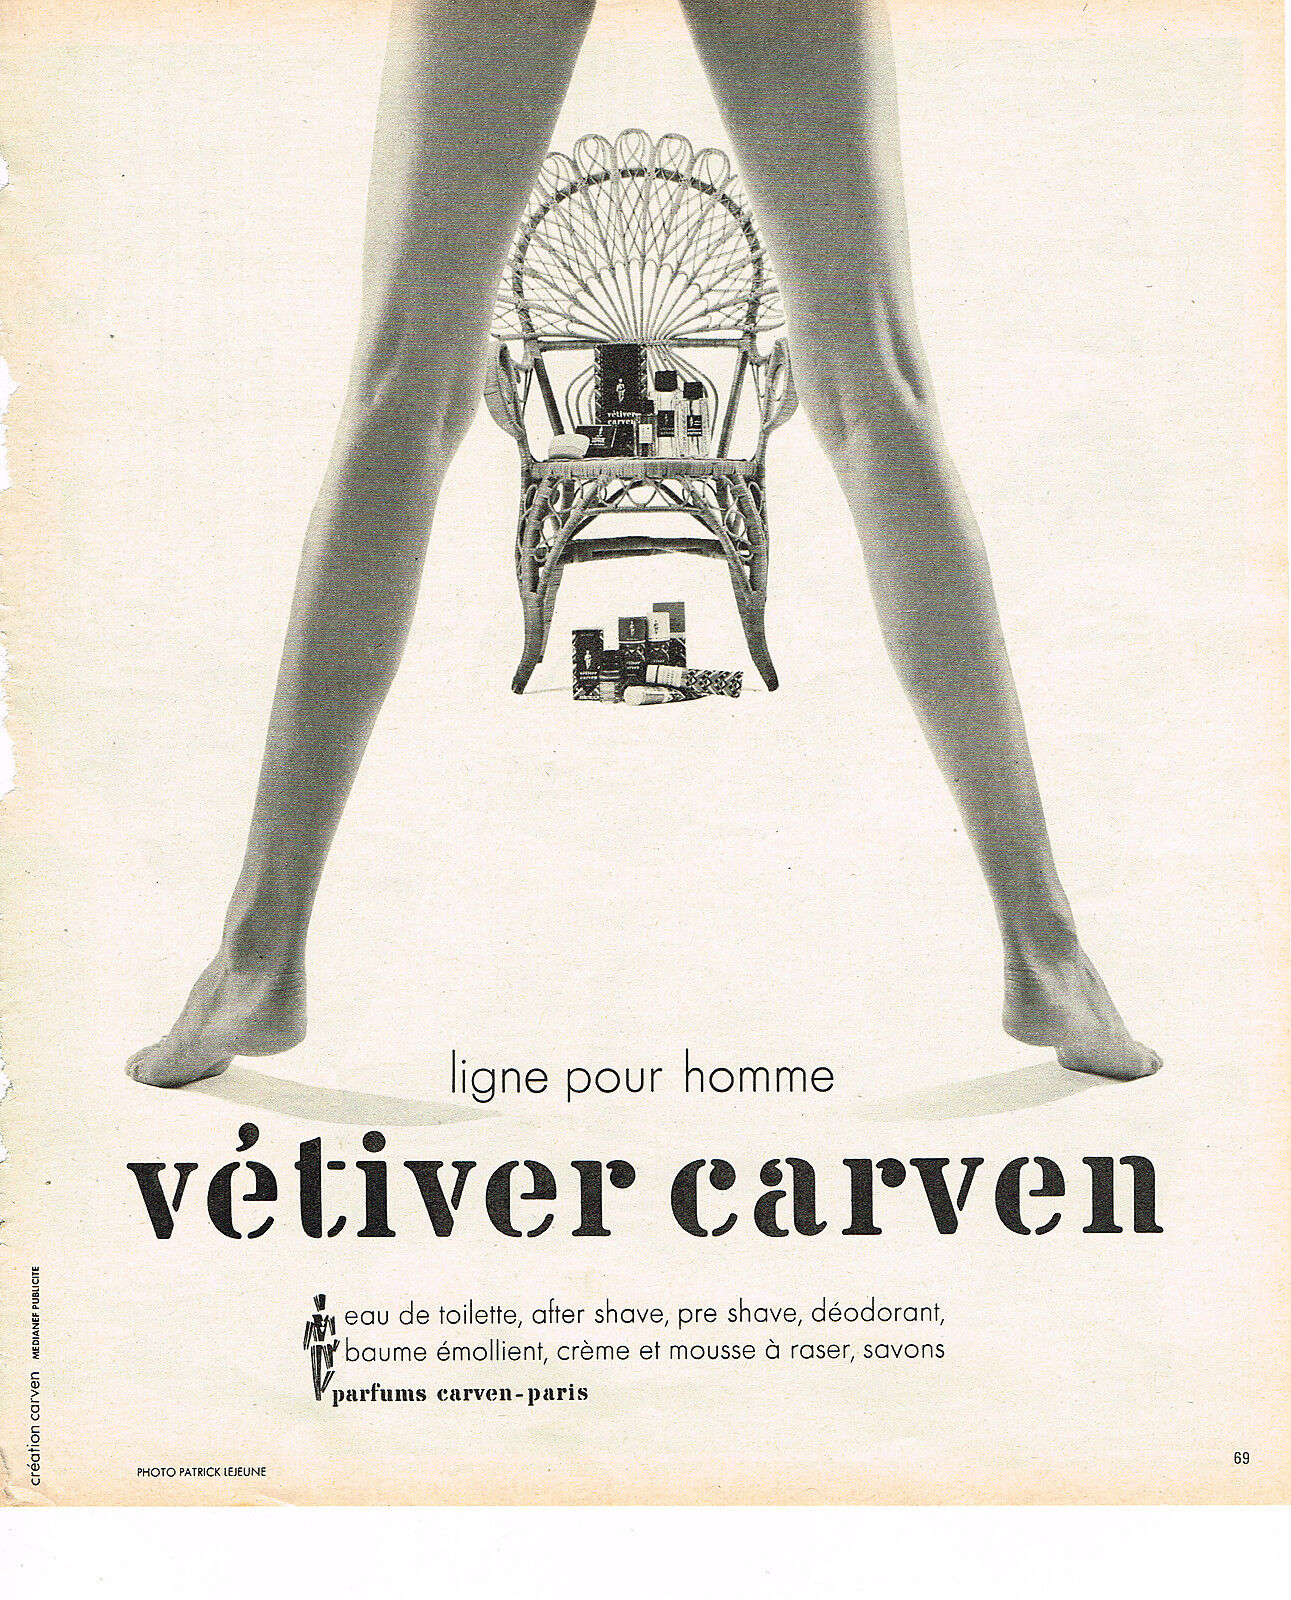 1975 ADVERTISING ADVERTISEMENT CARVEN men's eau de toilette VETIVER